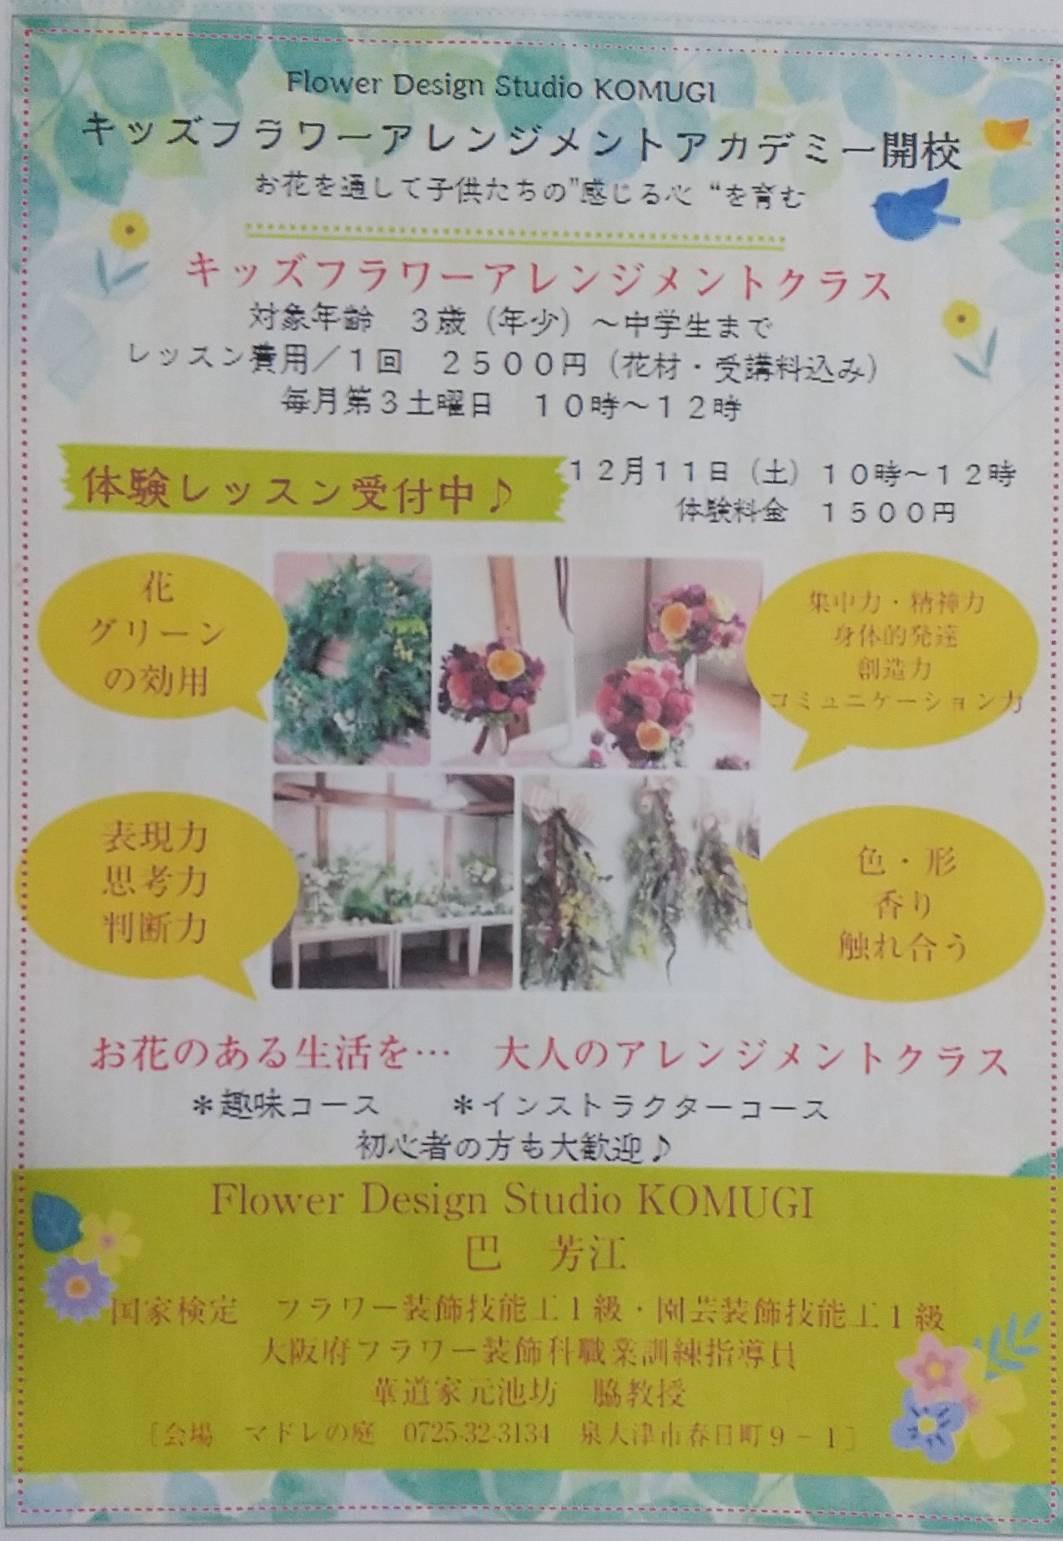 Flower Design Studio KOMUGI フラワーキッズアカデミー開講